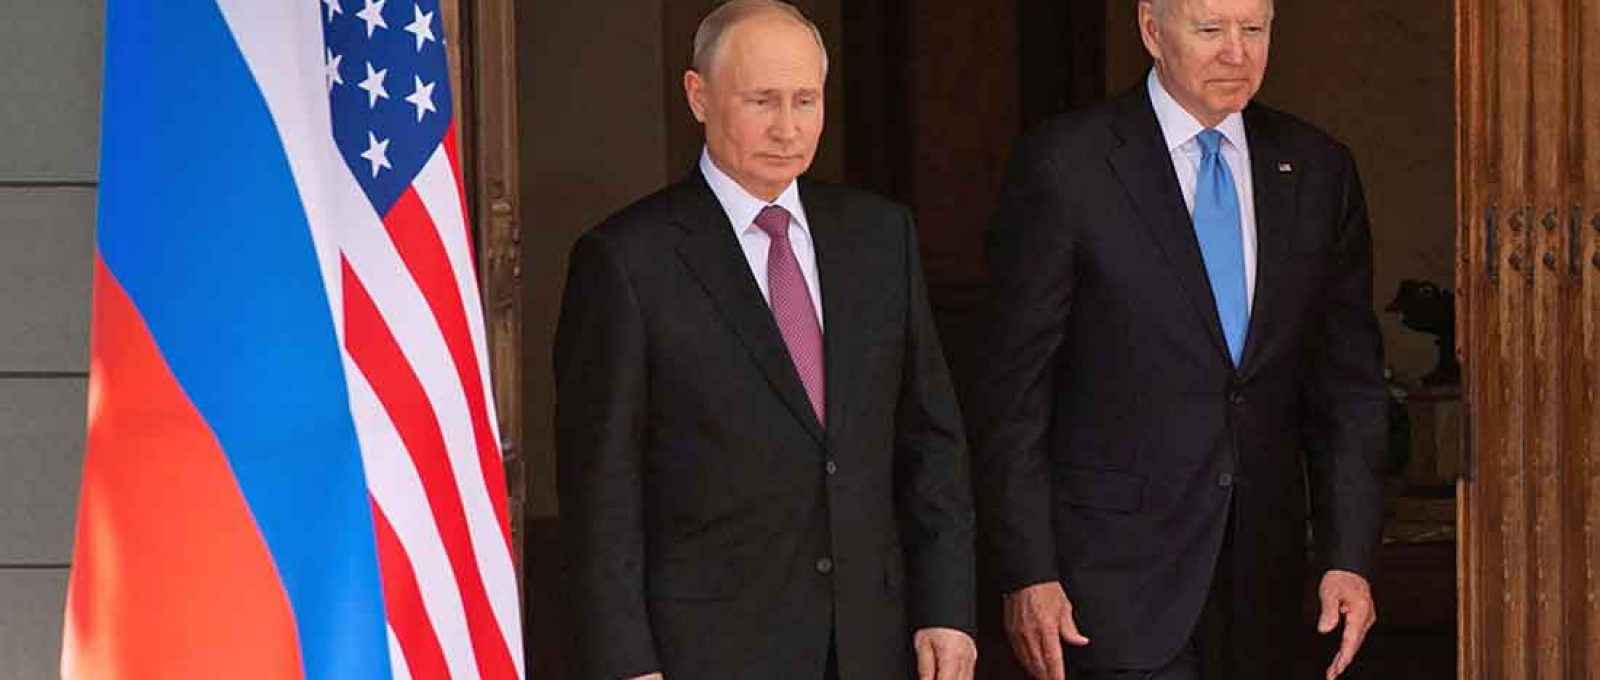 Os presidentes dos EUA, Joe Biden, e da Rússia, Vladimir Putin, chegam para a cúpula EUA-Rússia em Villa La Grange, em Genebra, Suíça, em 16 de junho de 2021 (Foto: Saul Loeb/Reuters).